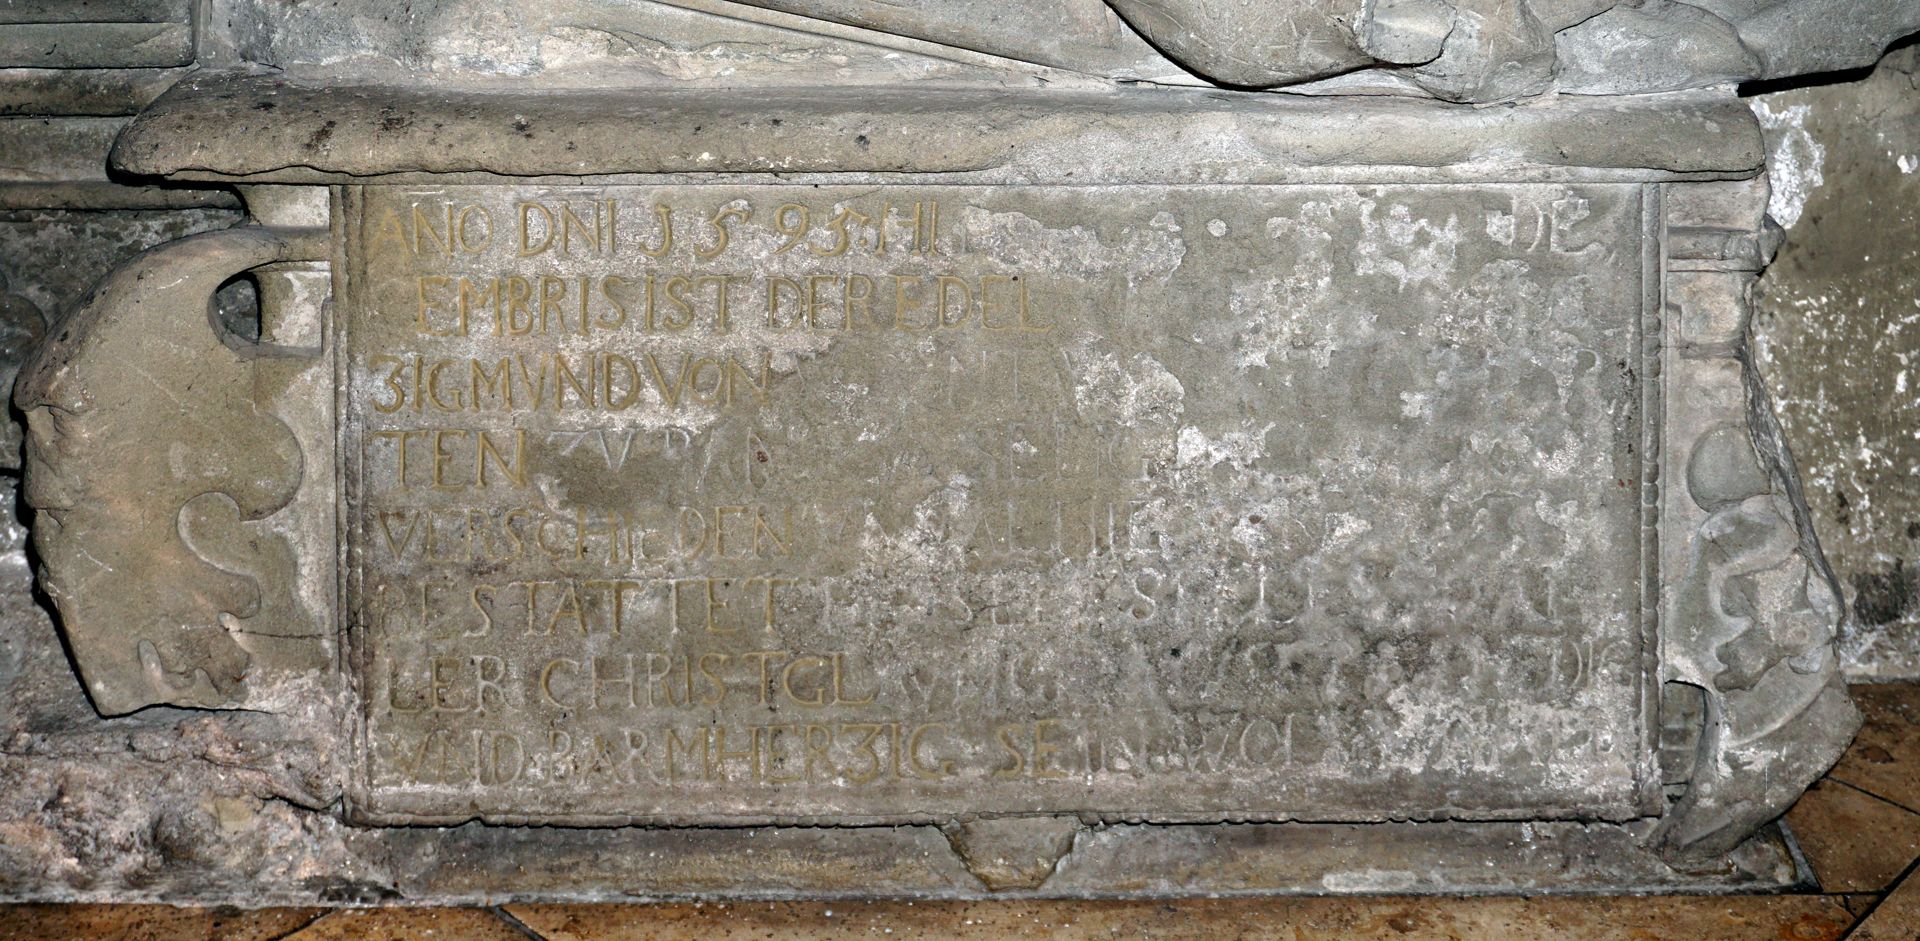 Grabdenkmal für den Banzer Propst Sigmund von Wiesenthau Inschrift